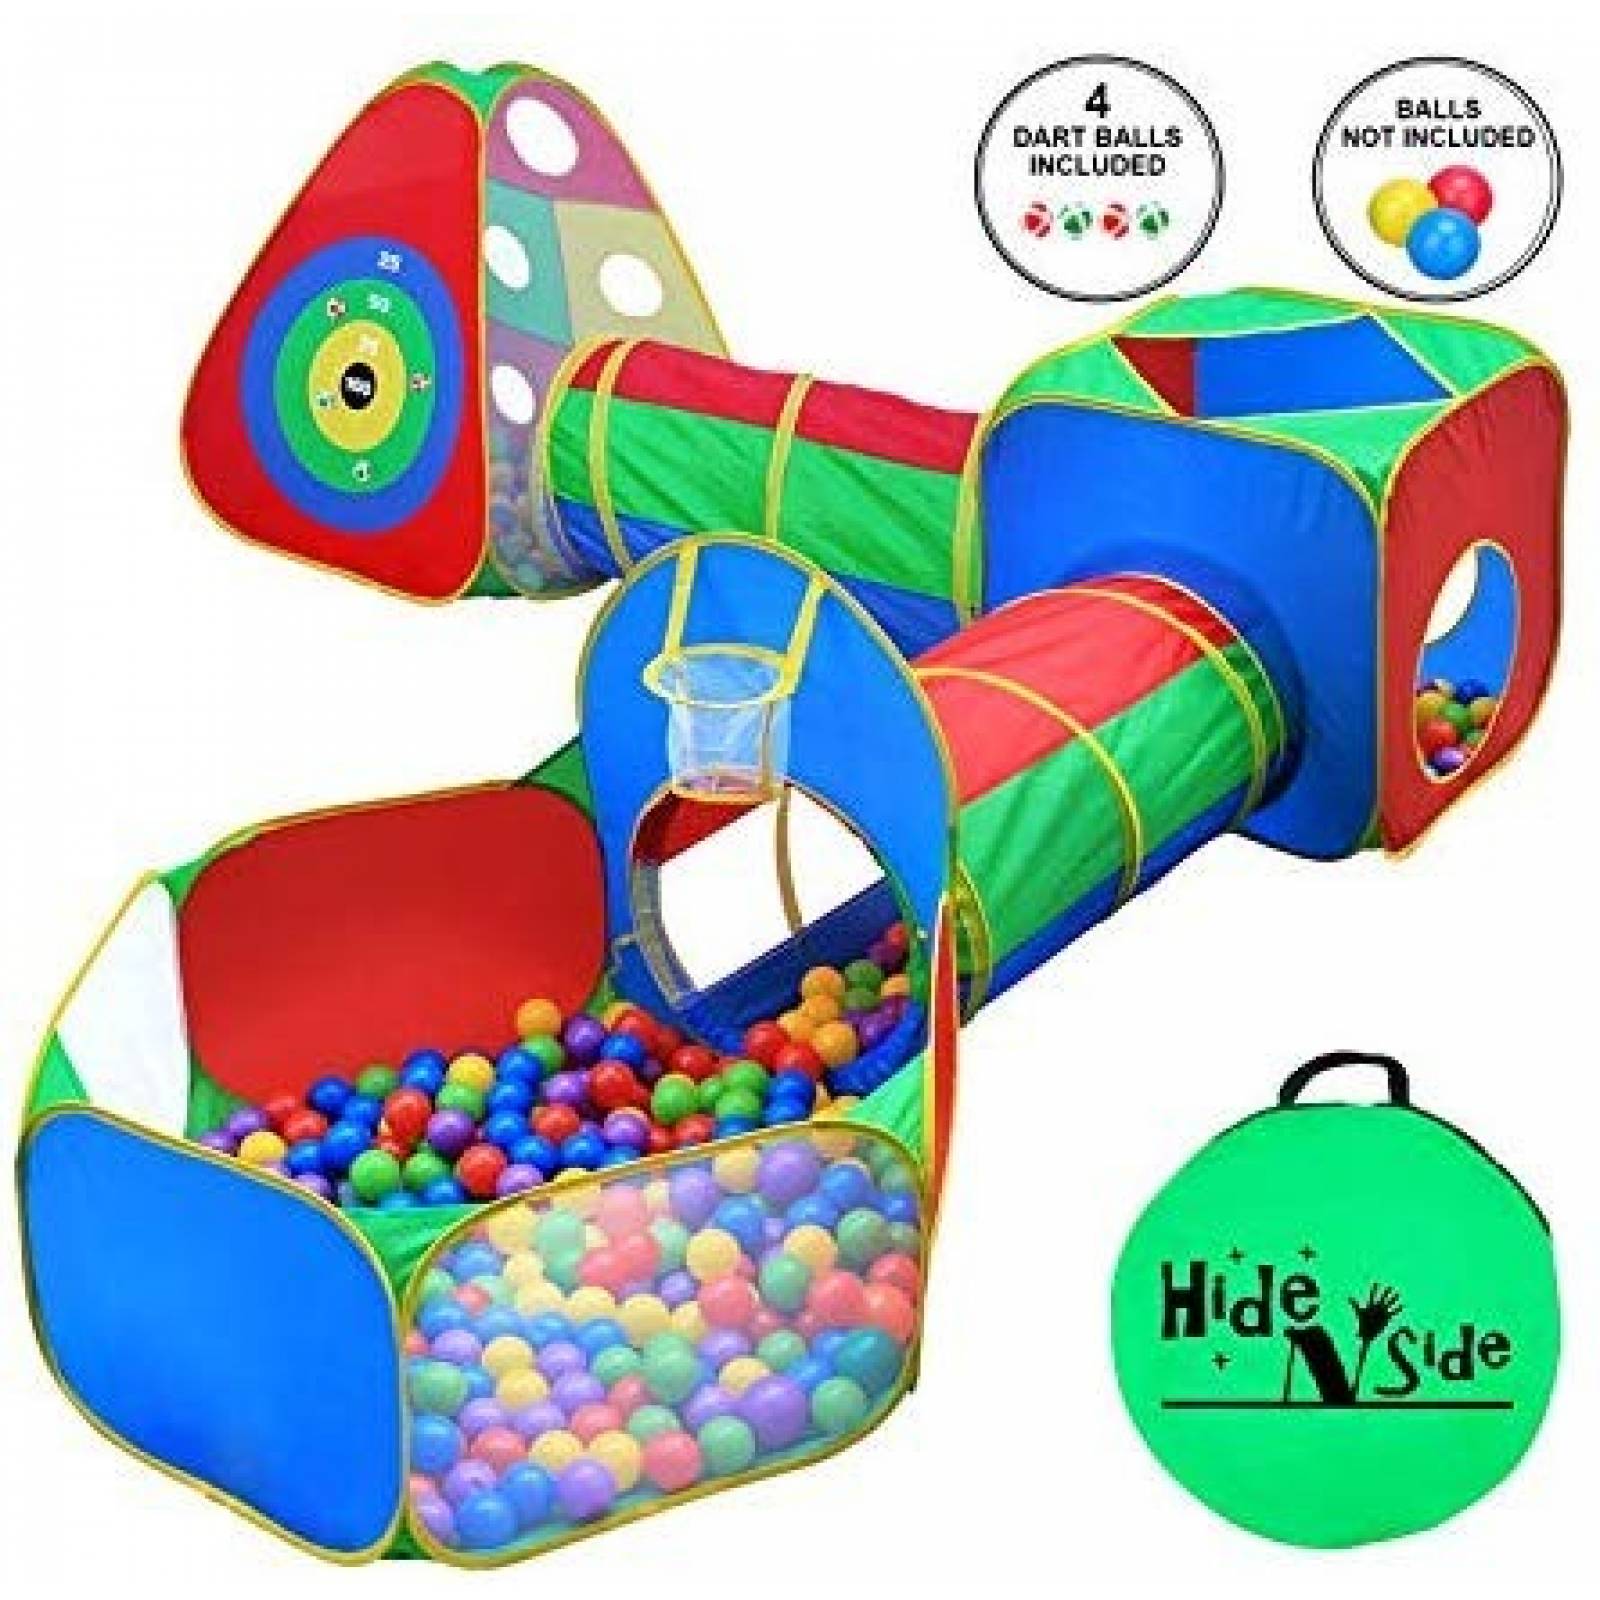 Juguete de tienda de campaña Hide N Side + tunel -multicolor